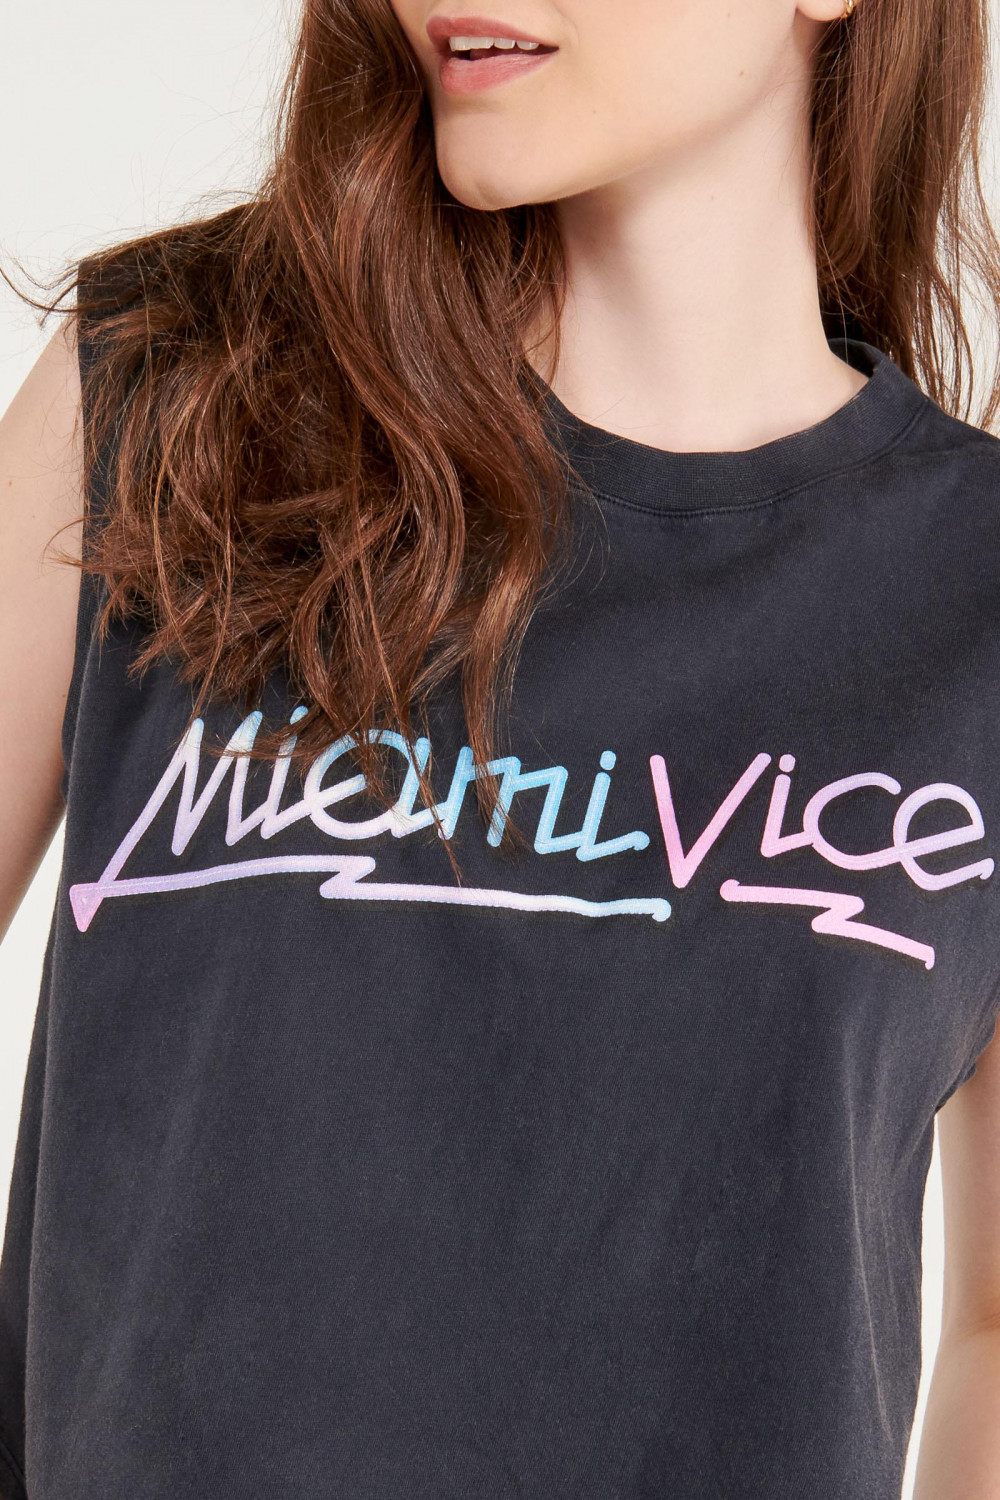 Camiseta sin mangas, estampado de Miami Vice.